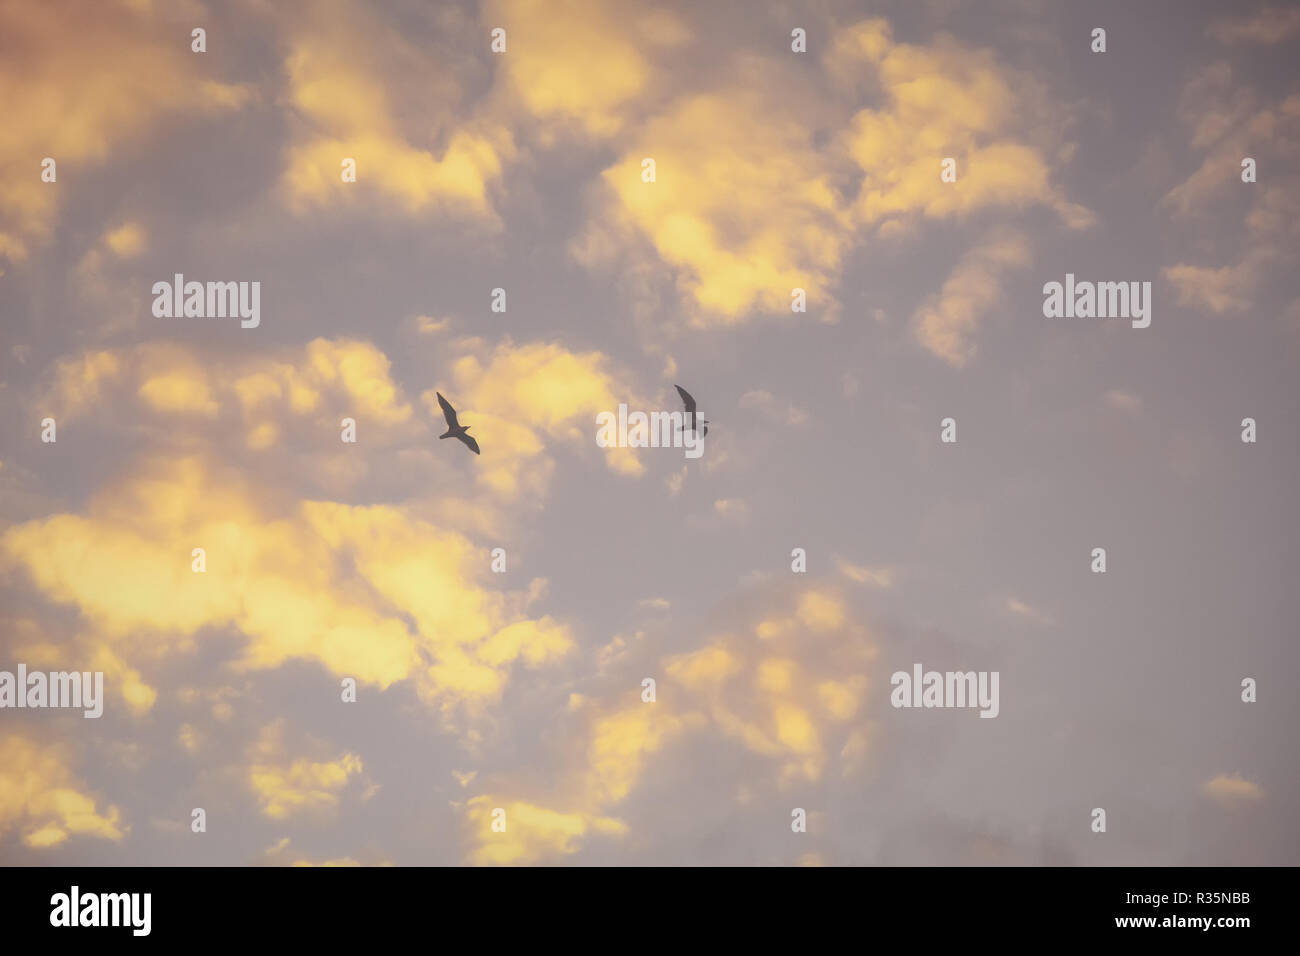 Zwei Möwen fliegen vor dem Hintergrund der Wolken von den Strahlen der Abendsonne beleuchtet. Nebel, schwaches Bild für die Verwendung als Hintergrundbild Stockfoto